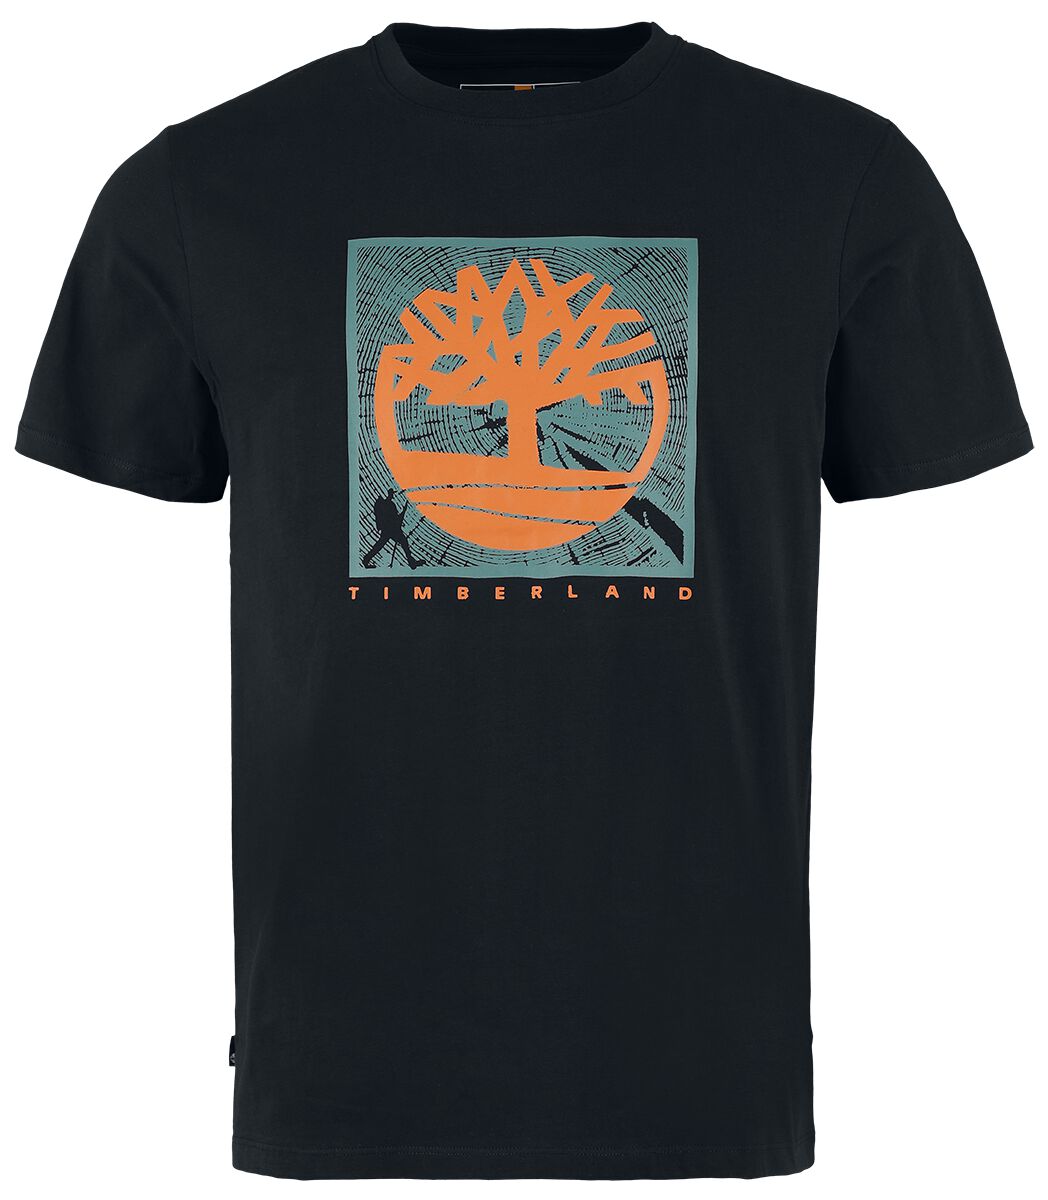 Timberland T-Shirt - Short Sleeve Front Graphic Tee - S bis XXL - für Männer - Größe M - schwarz